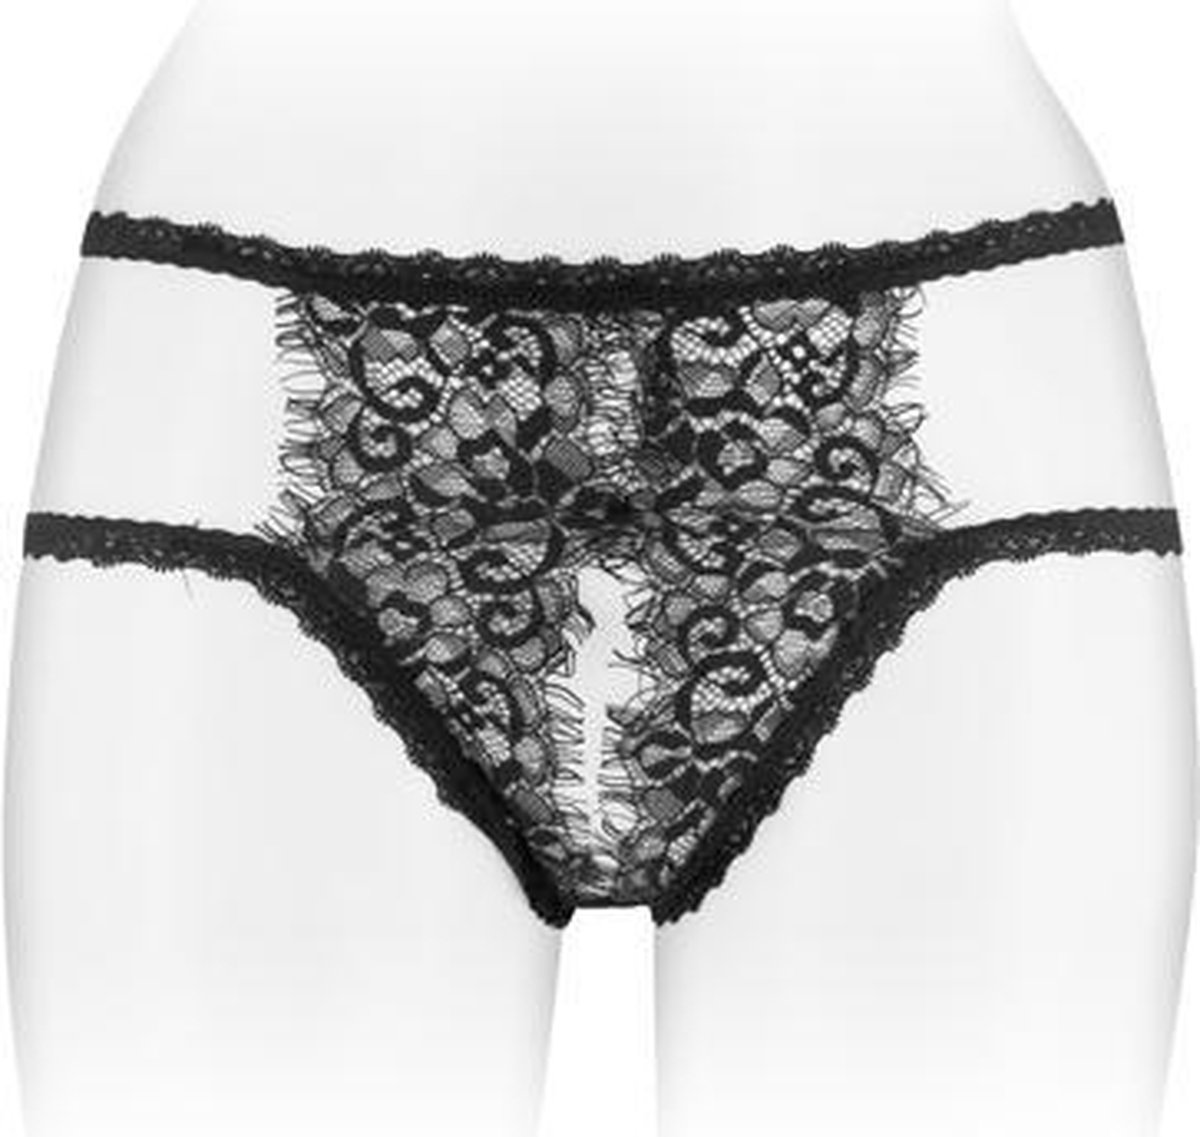 Fashion Secret Emma - Erotische Slip met Open Kruis - Zwart - One Size